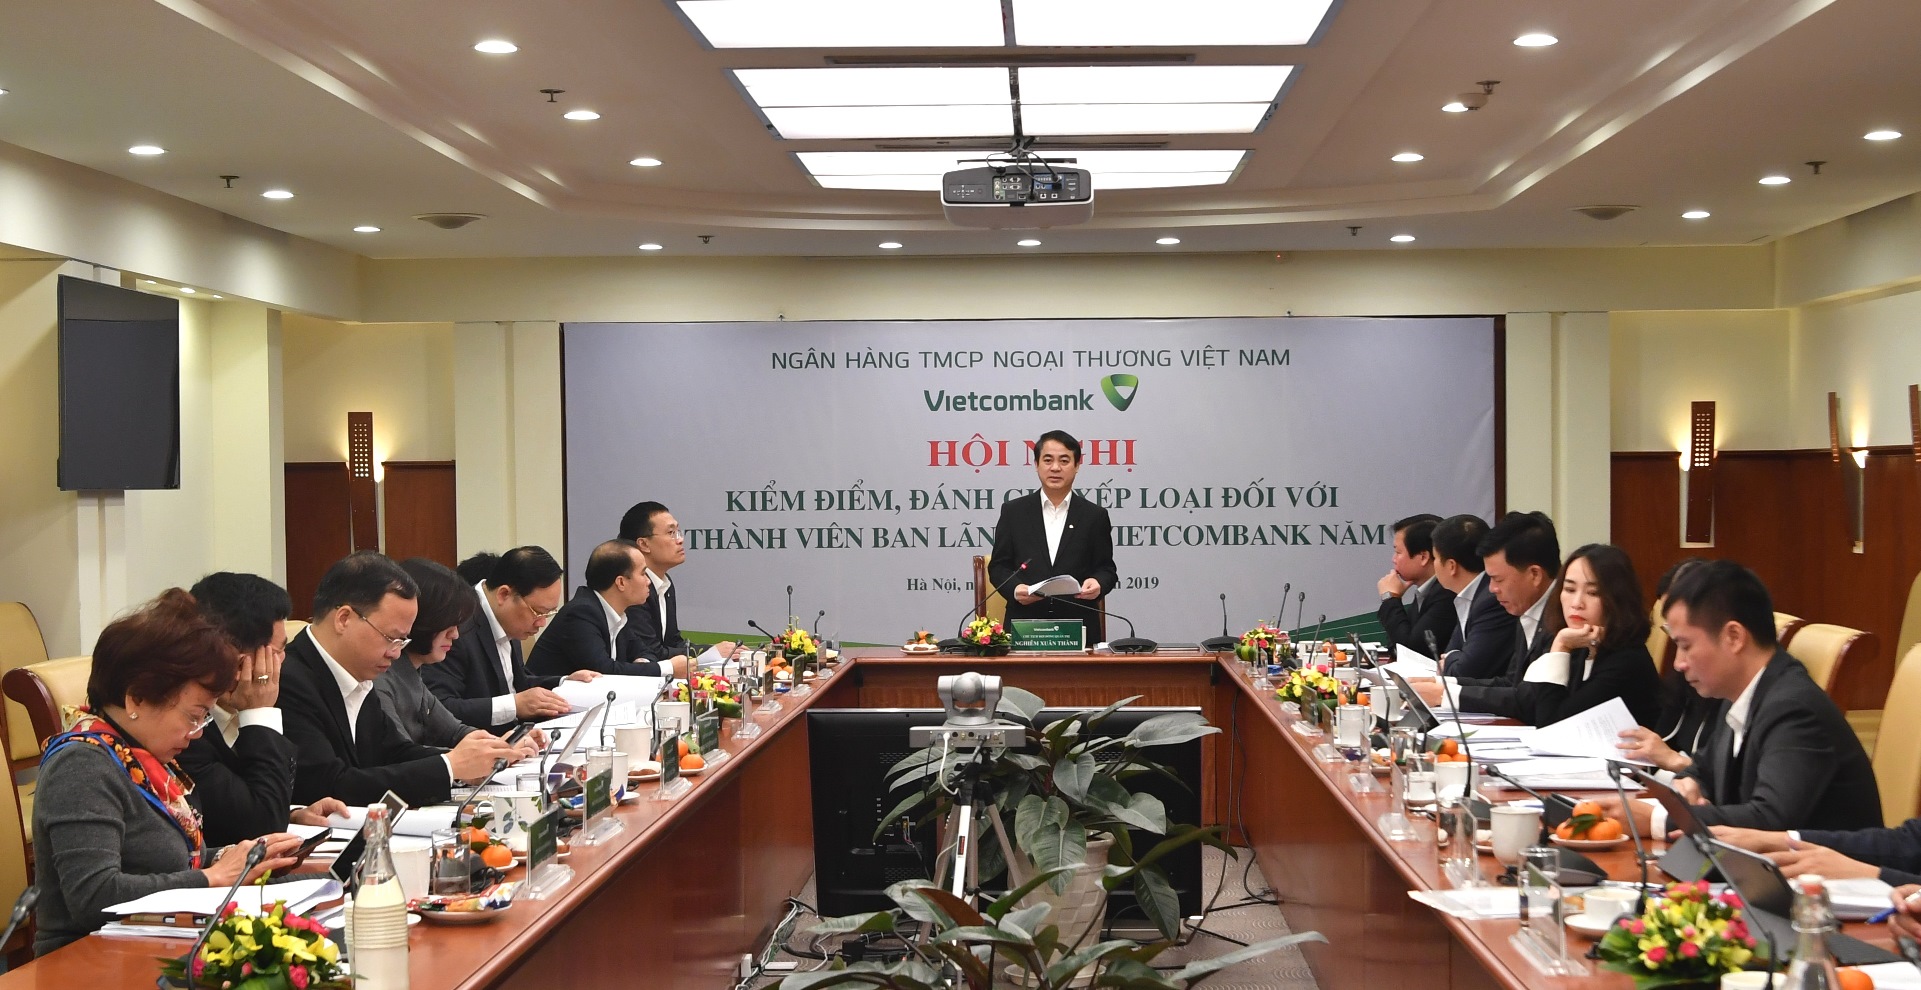 Đảng ủy Vietcombank tổ chức Hội nghị kiểm điểm, đánh giá, xếp loại đối với các thành viên Ban lãnh đạo năm 2019